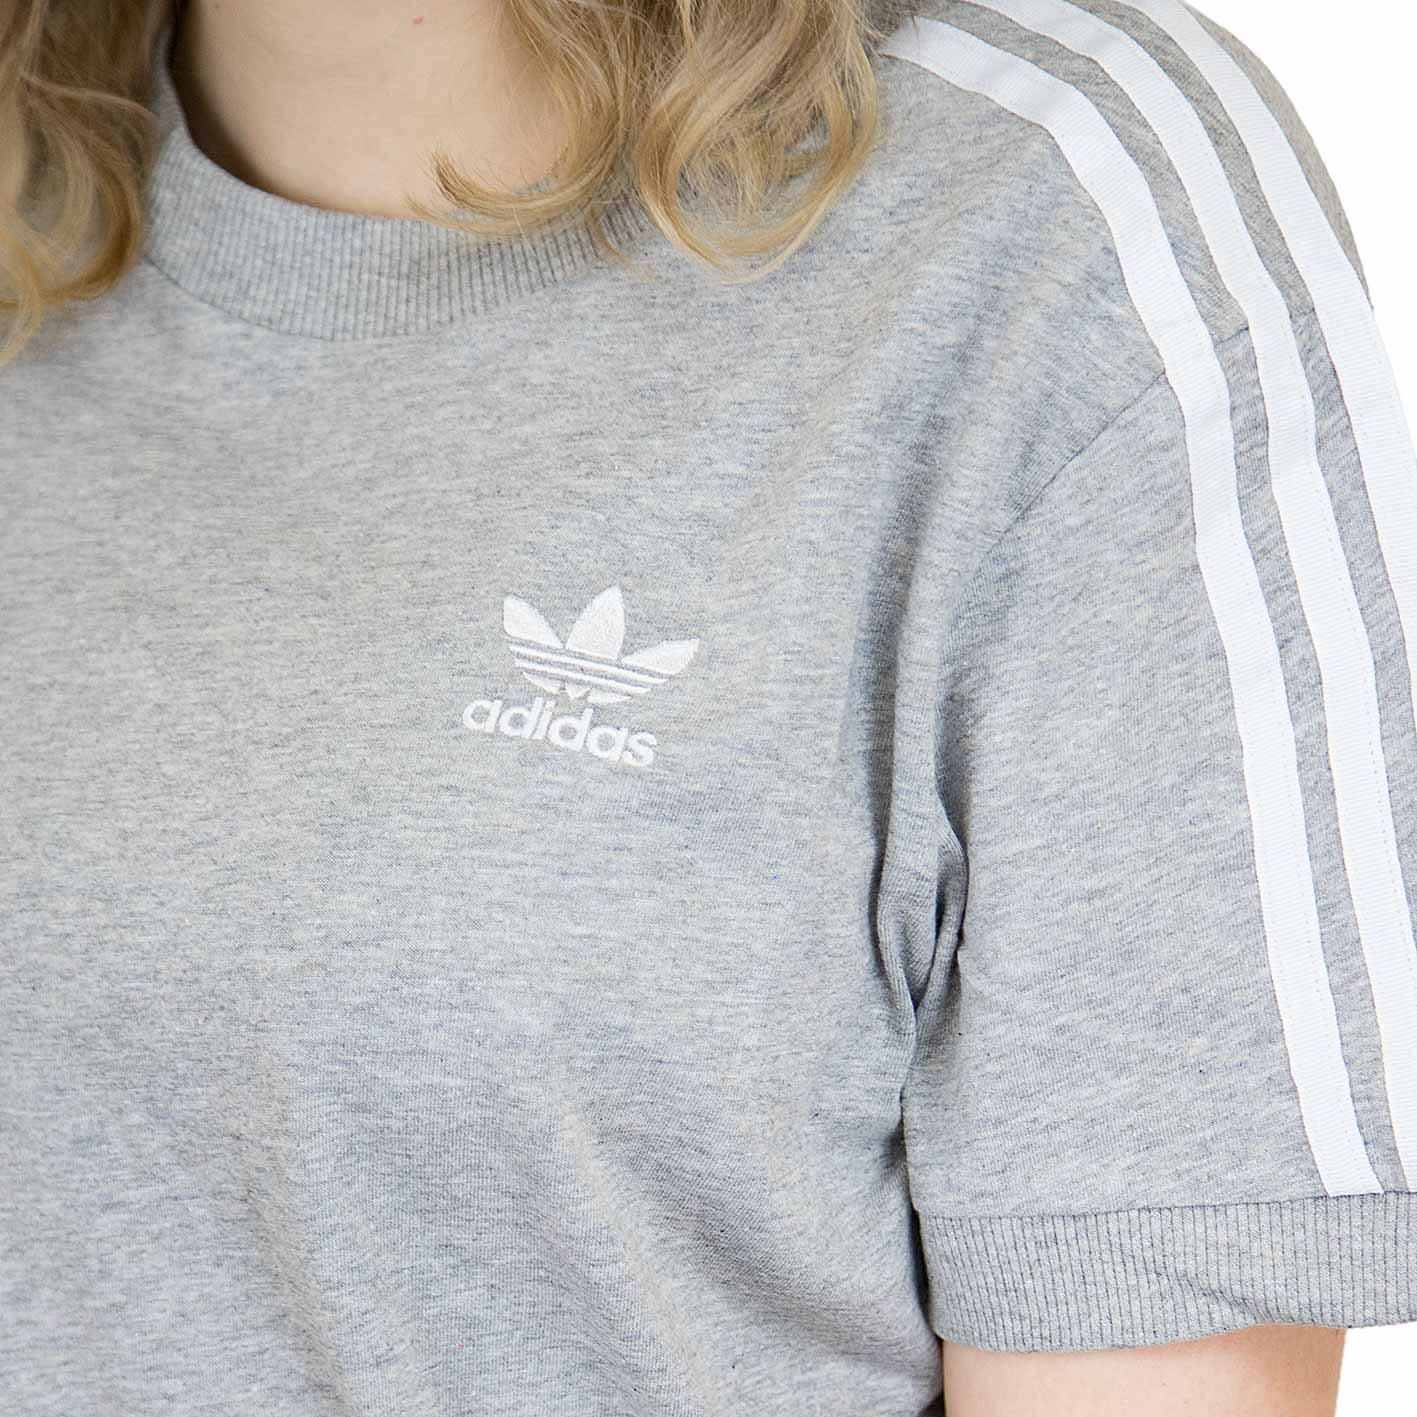 ☆ Adidas Originals Damen T-Shirt 3 Stripes md.grau.htr - hier bestellen!